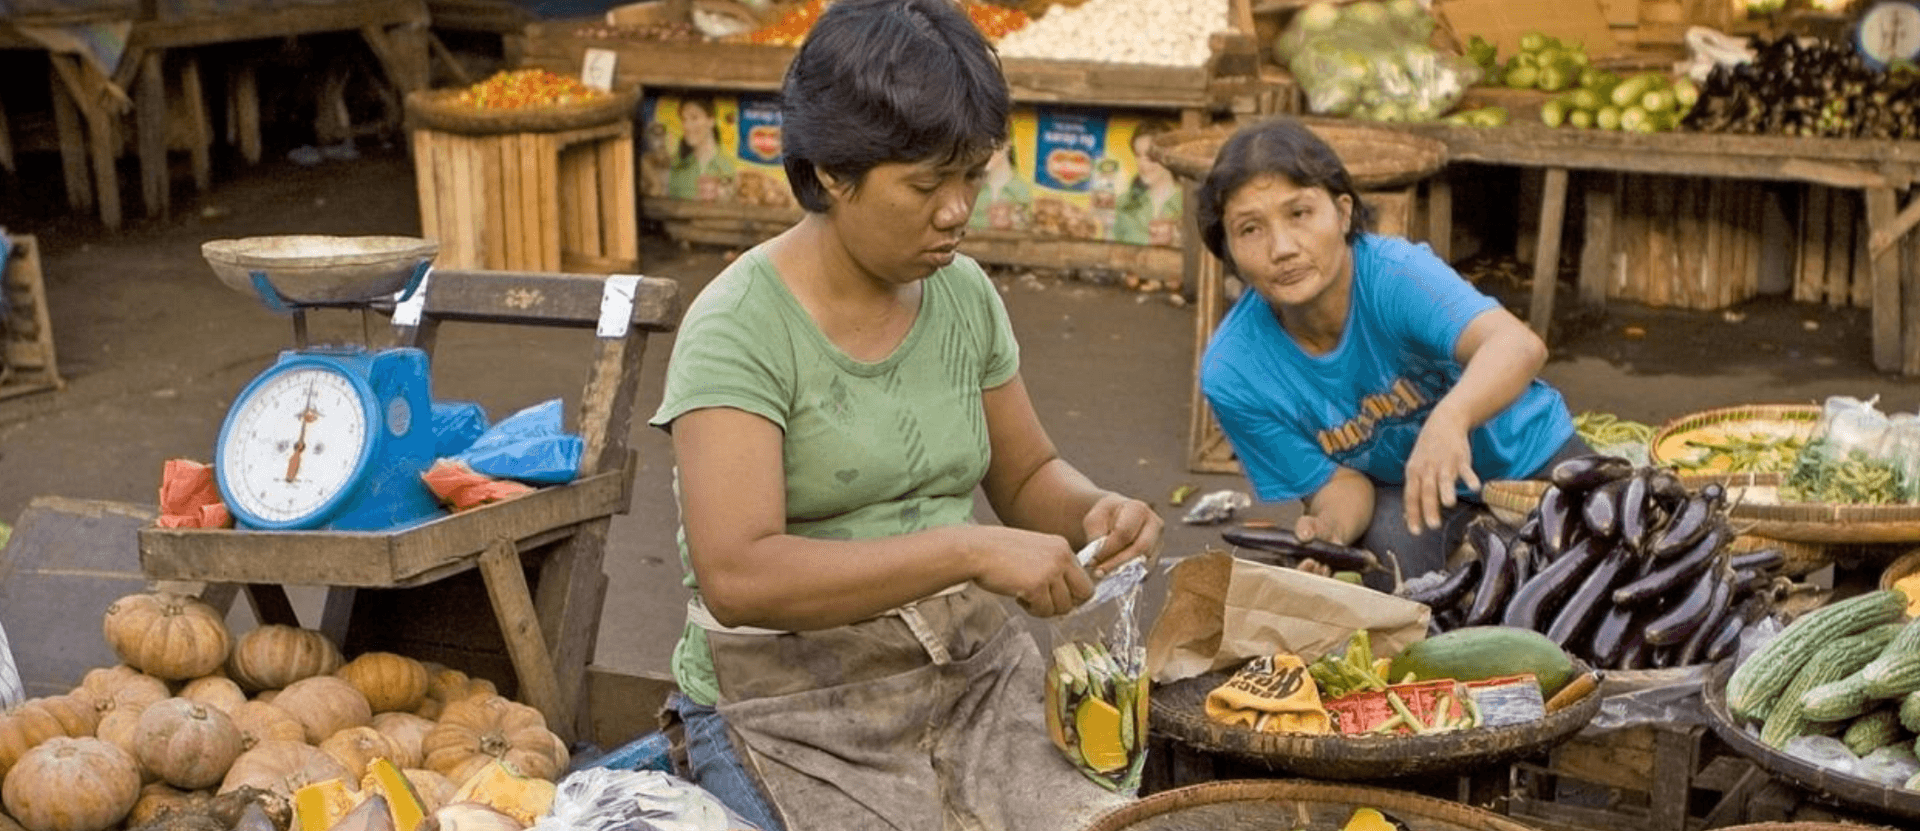 Two women in food market